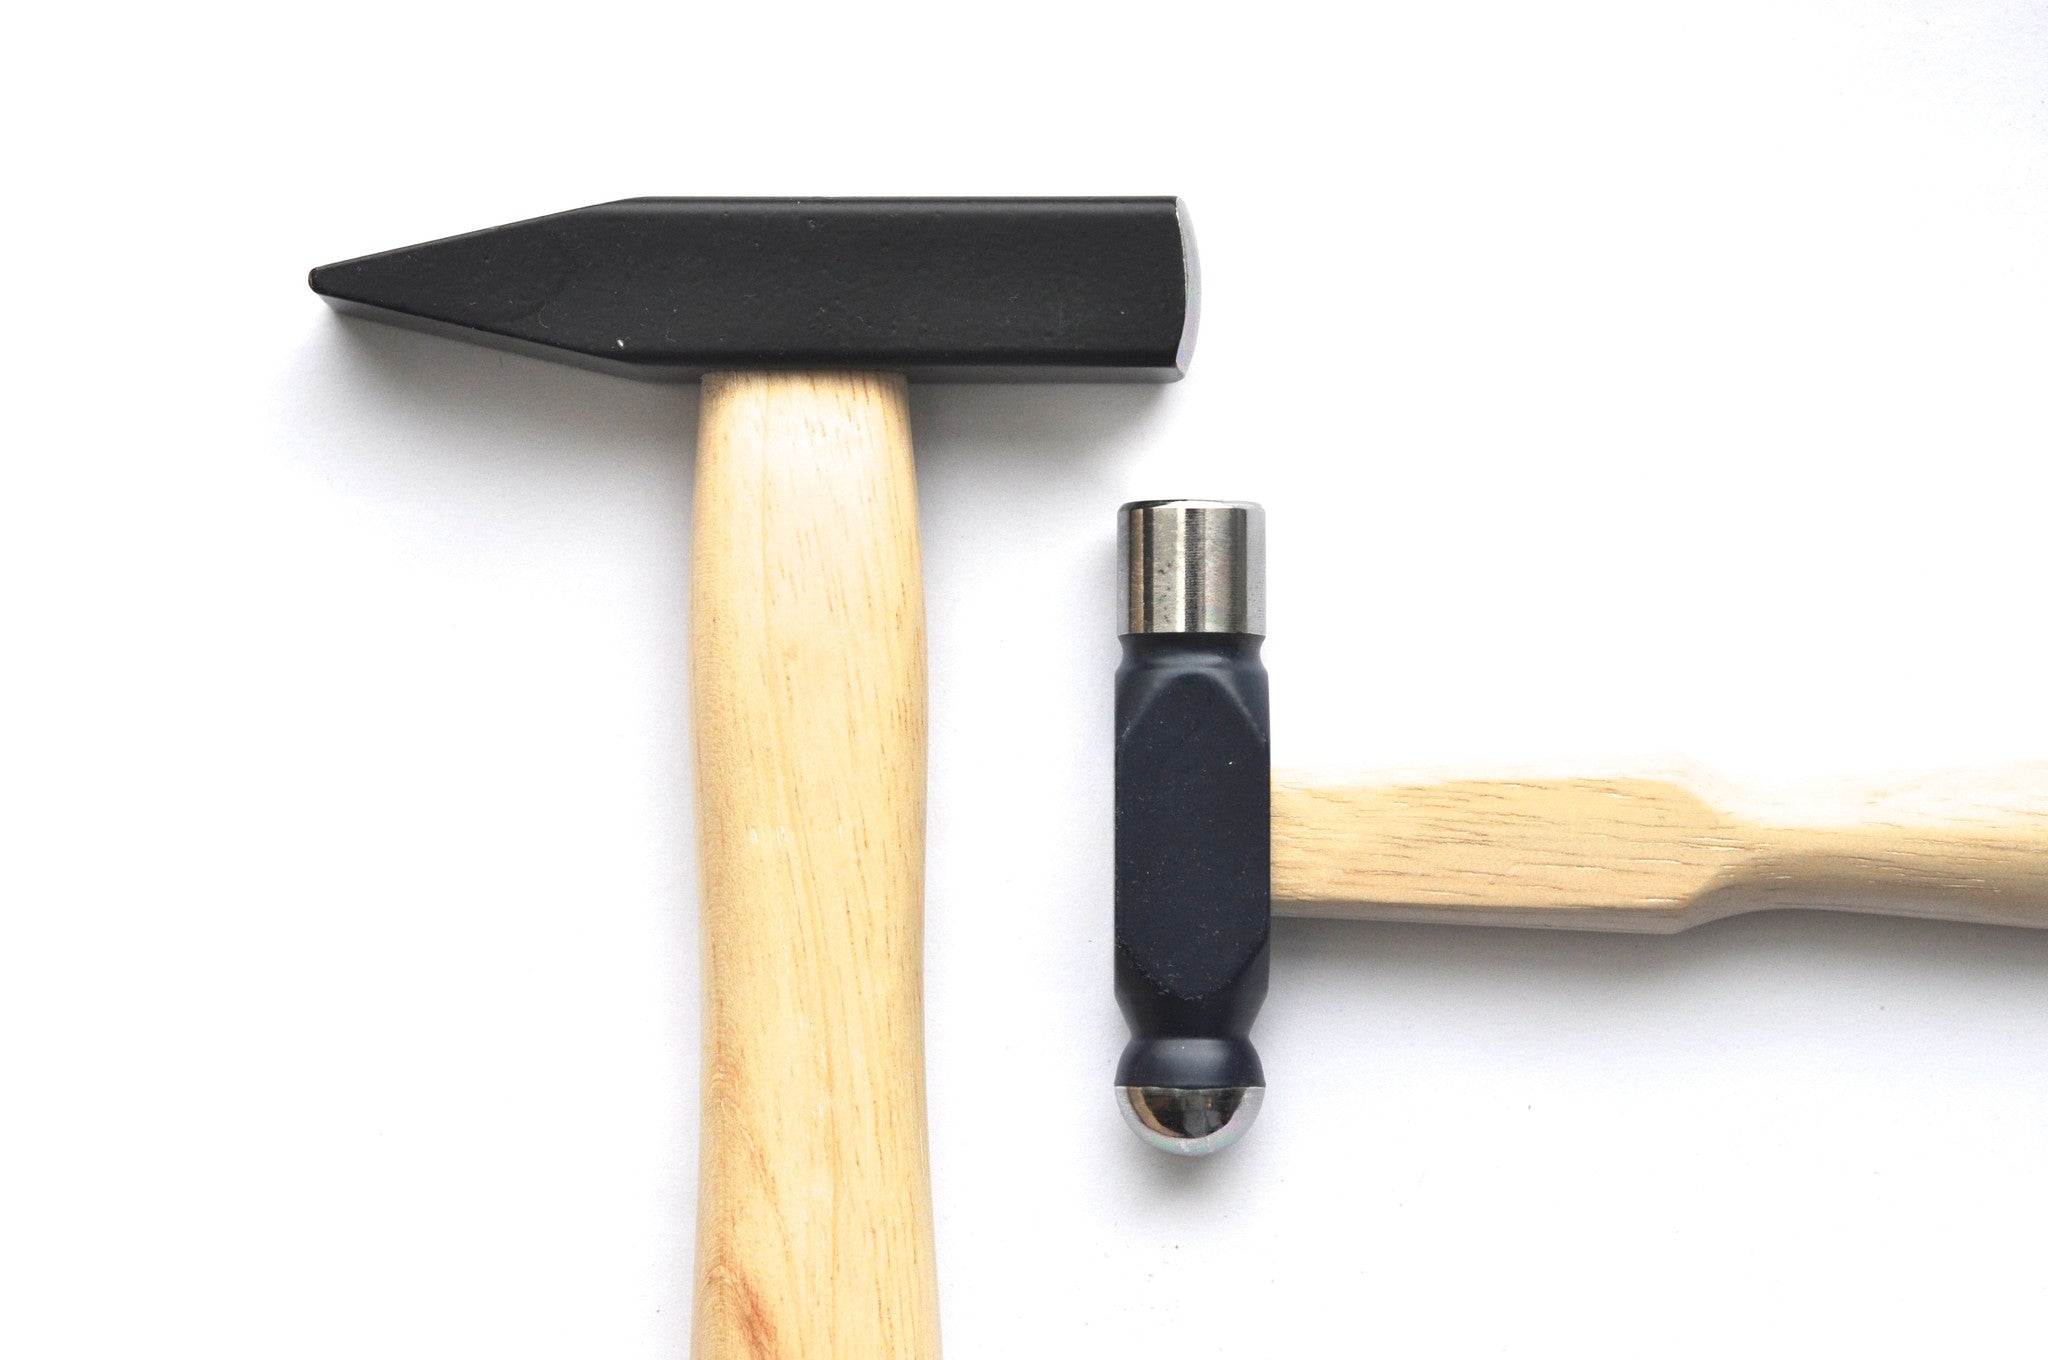 tools / small ball peen hammer